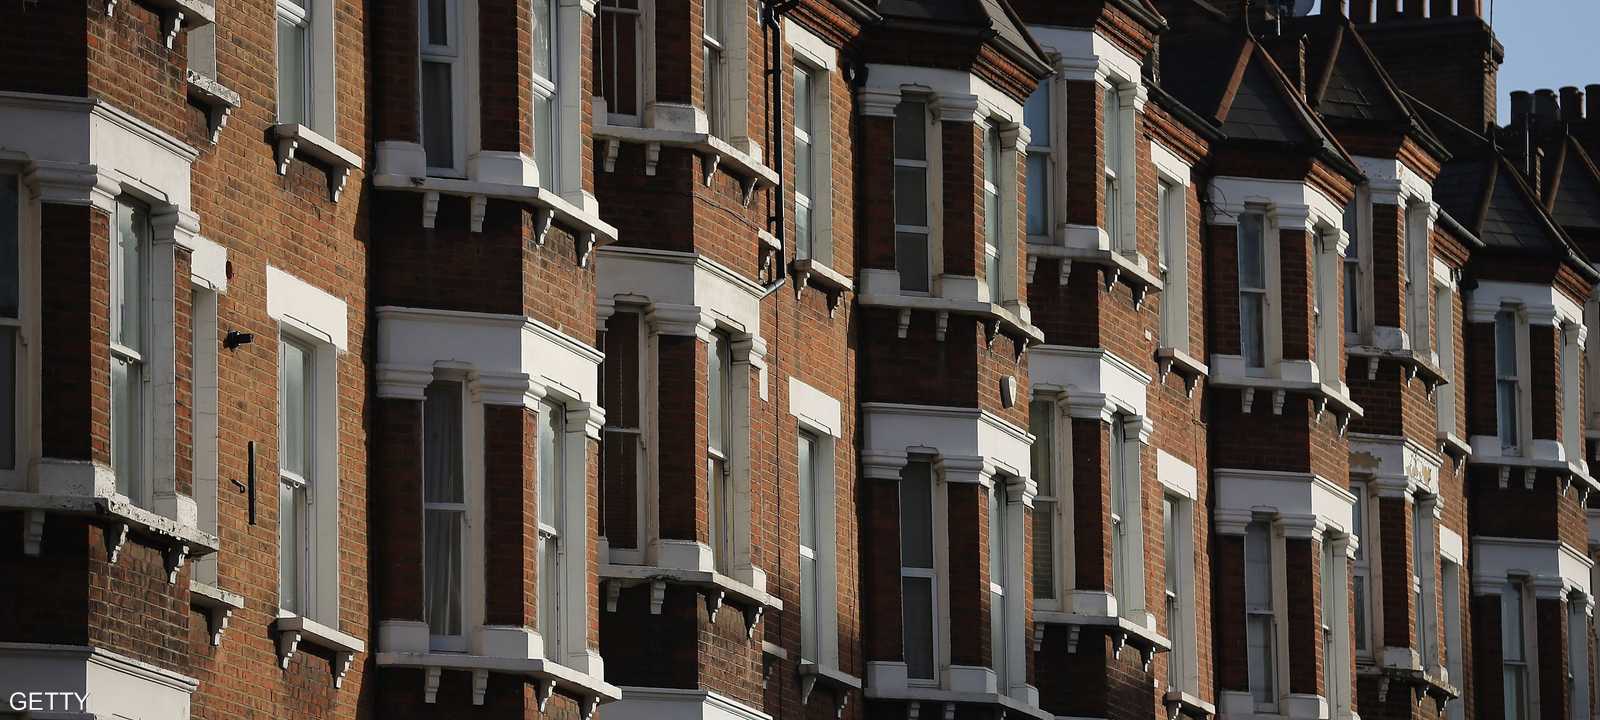 أسعار البيوت في لندن ترتفع نتيجة اقبال المشترين الأجانب